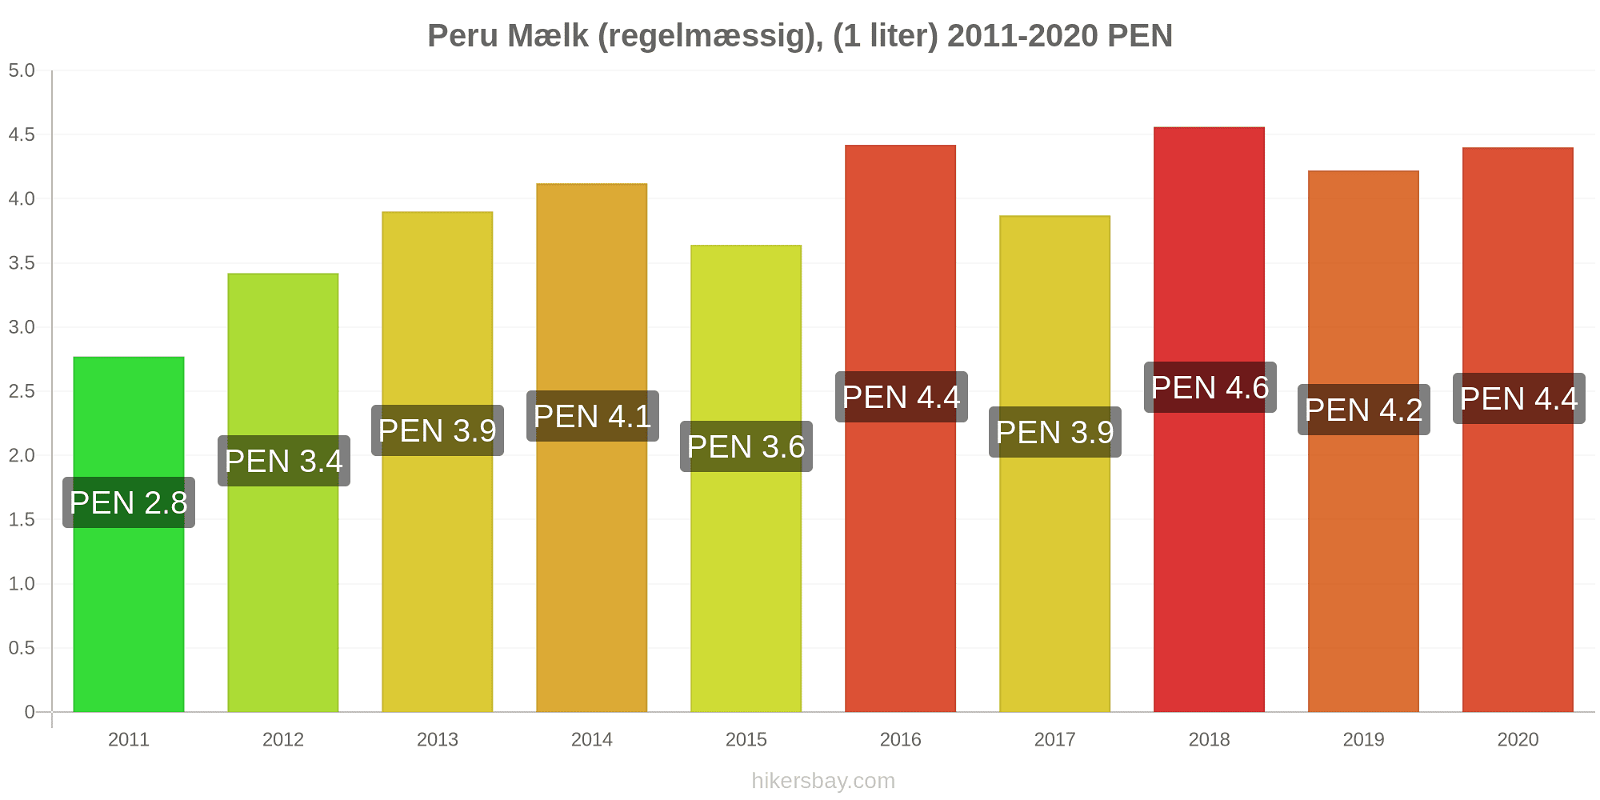 Peru prisændringer Mælk (regelmæssig), (1 liter) hikersbay.com